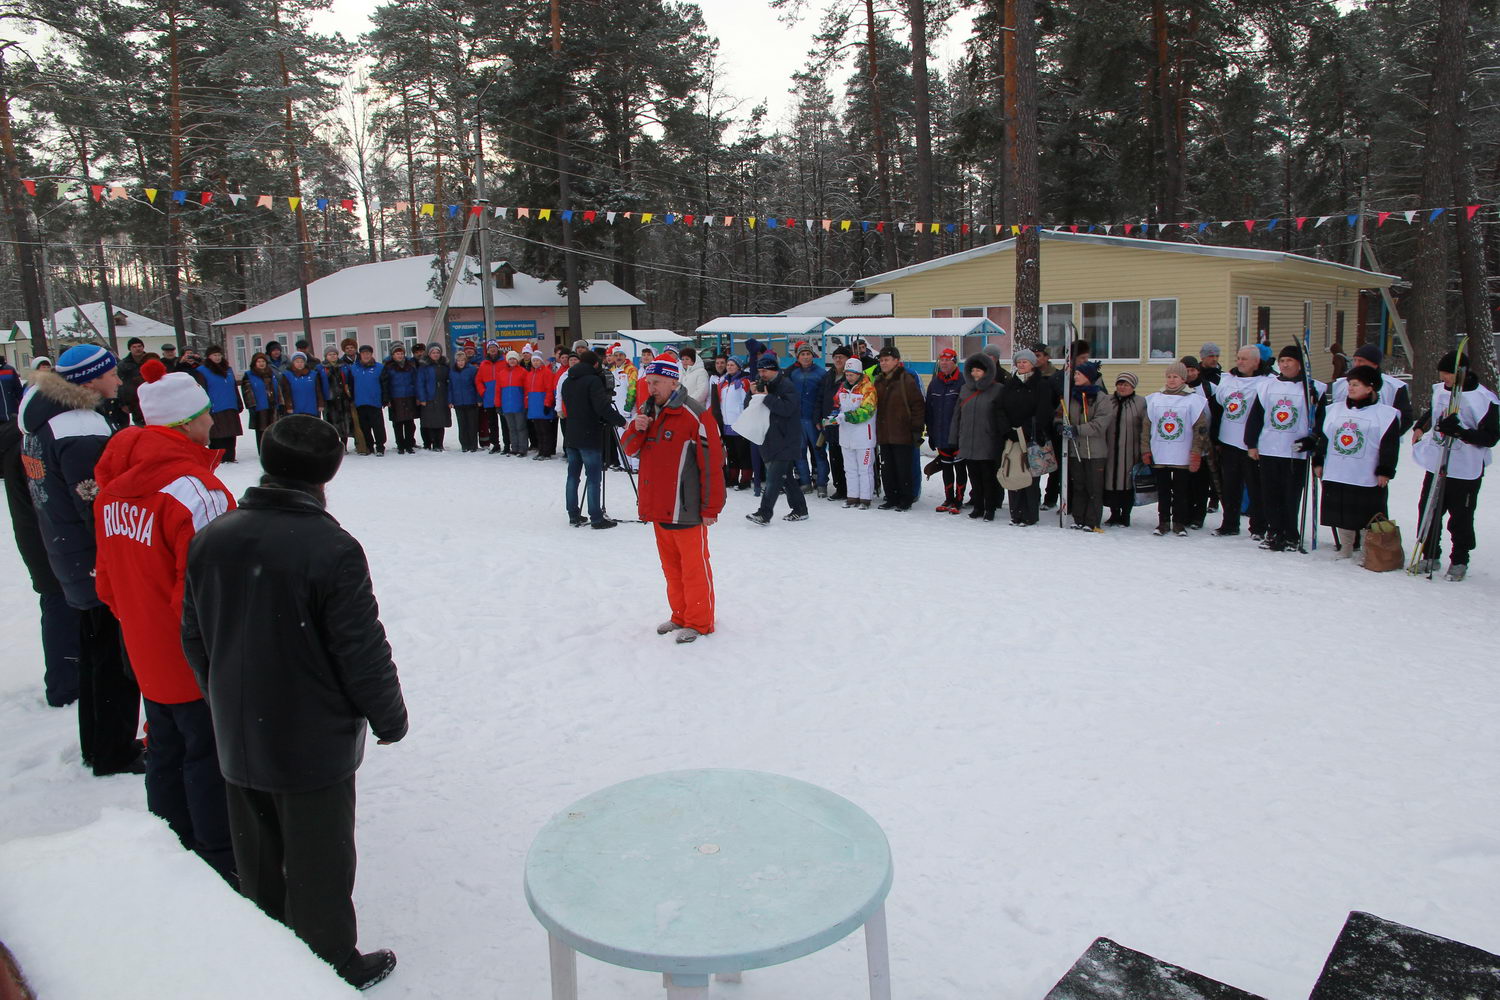 По итогам спортивных состязаний в командном зачете выиграли пенсионеры Калуги. Сборная Дзержинского района заняла второе место, бронзу получили спортсмены из Медынского района.